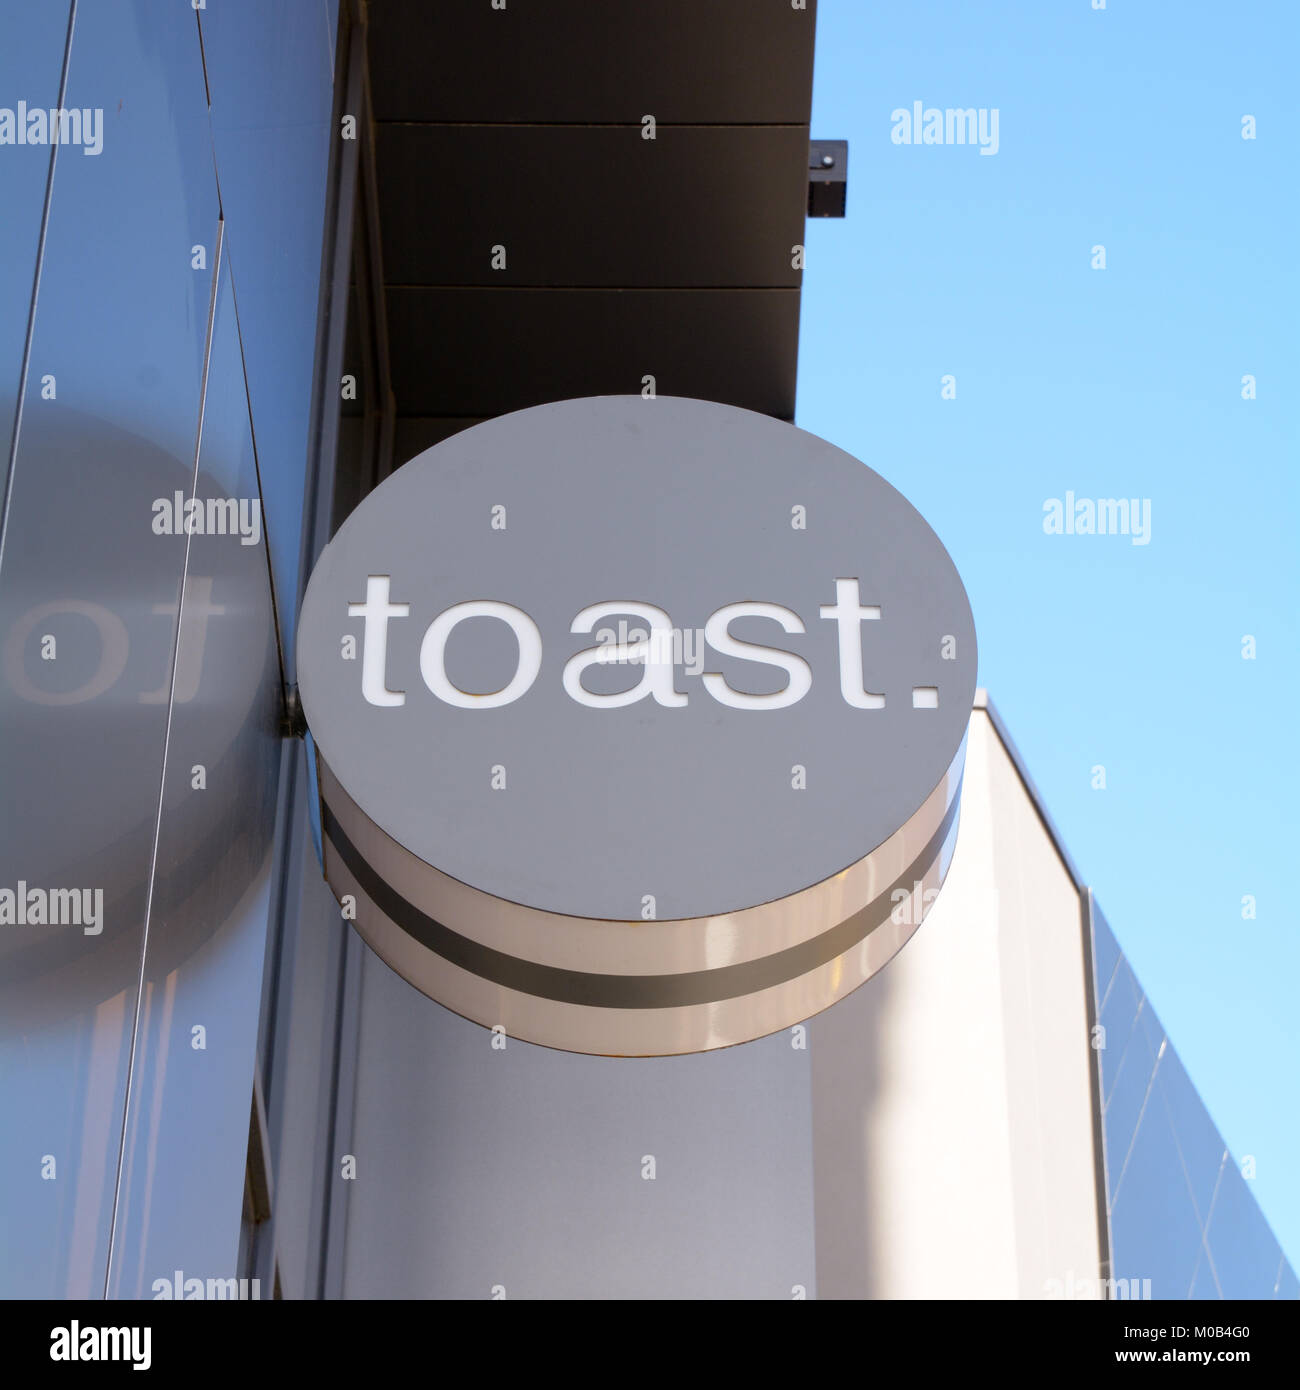 Toast ristorante - un concetto di ristorante dove tutto è servito su toast in Bedford Bedfordshire Inghilterra Foto Stock